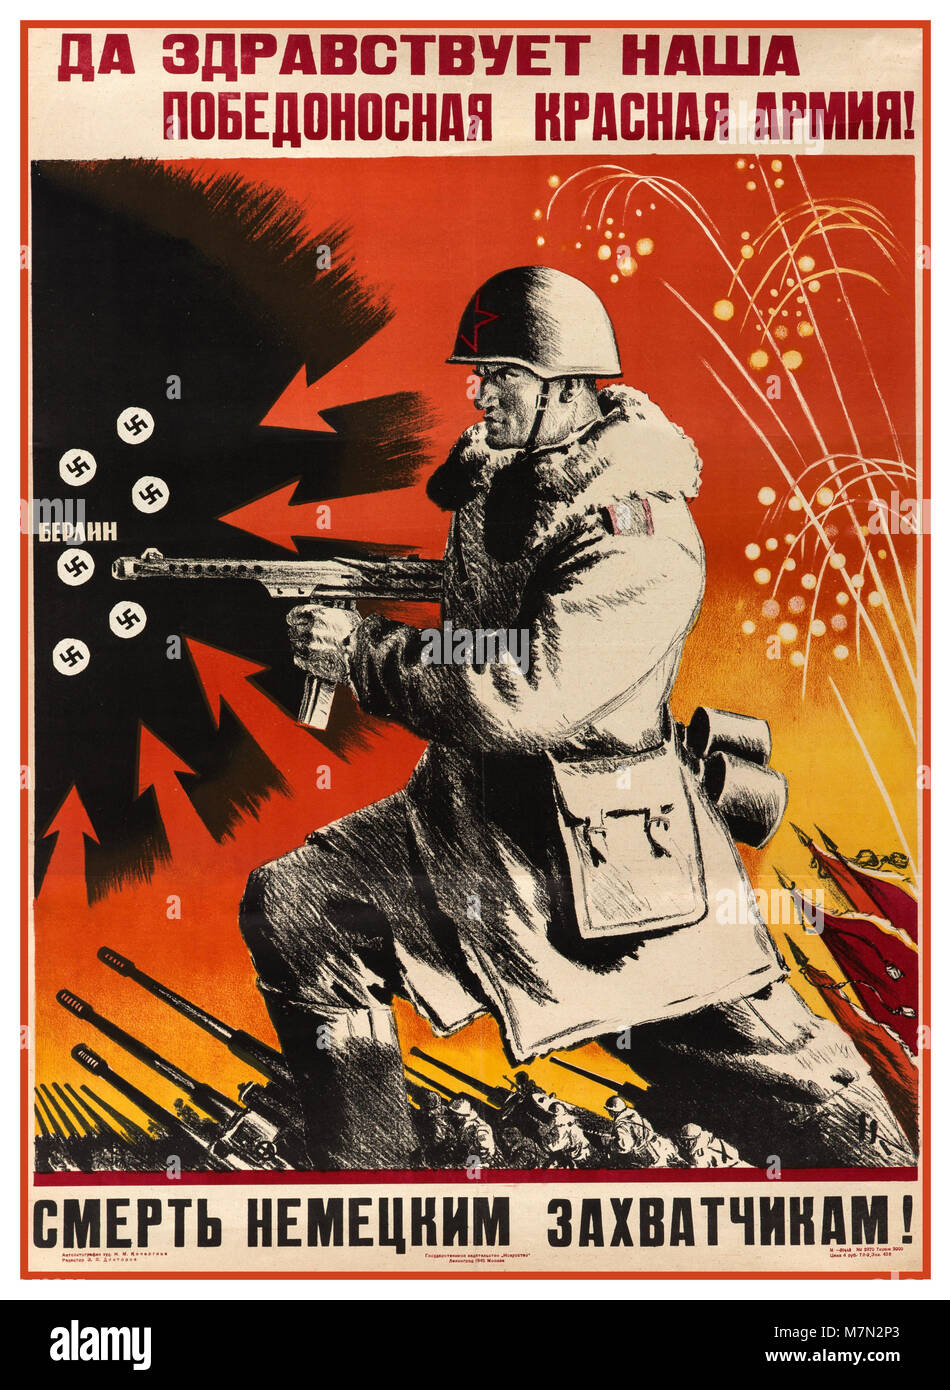 Jahrgang 1940 WW2 Russian Propaganda Poster' lange Unsere siegreichen roten Armee!' - 'Tod den Deutschen Invasoren live!' Stockfoto